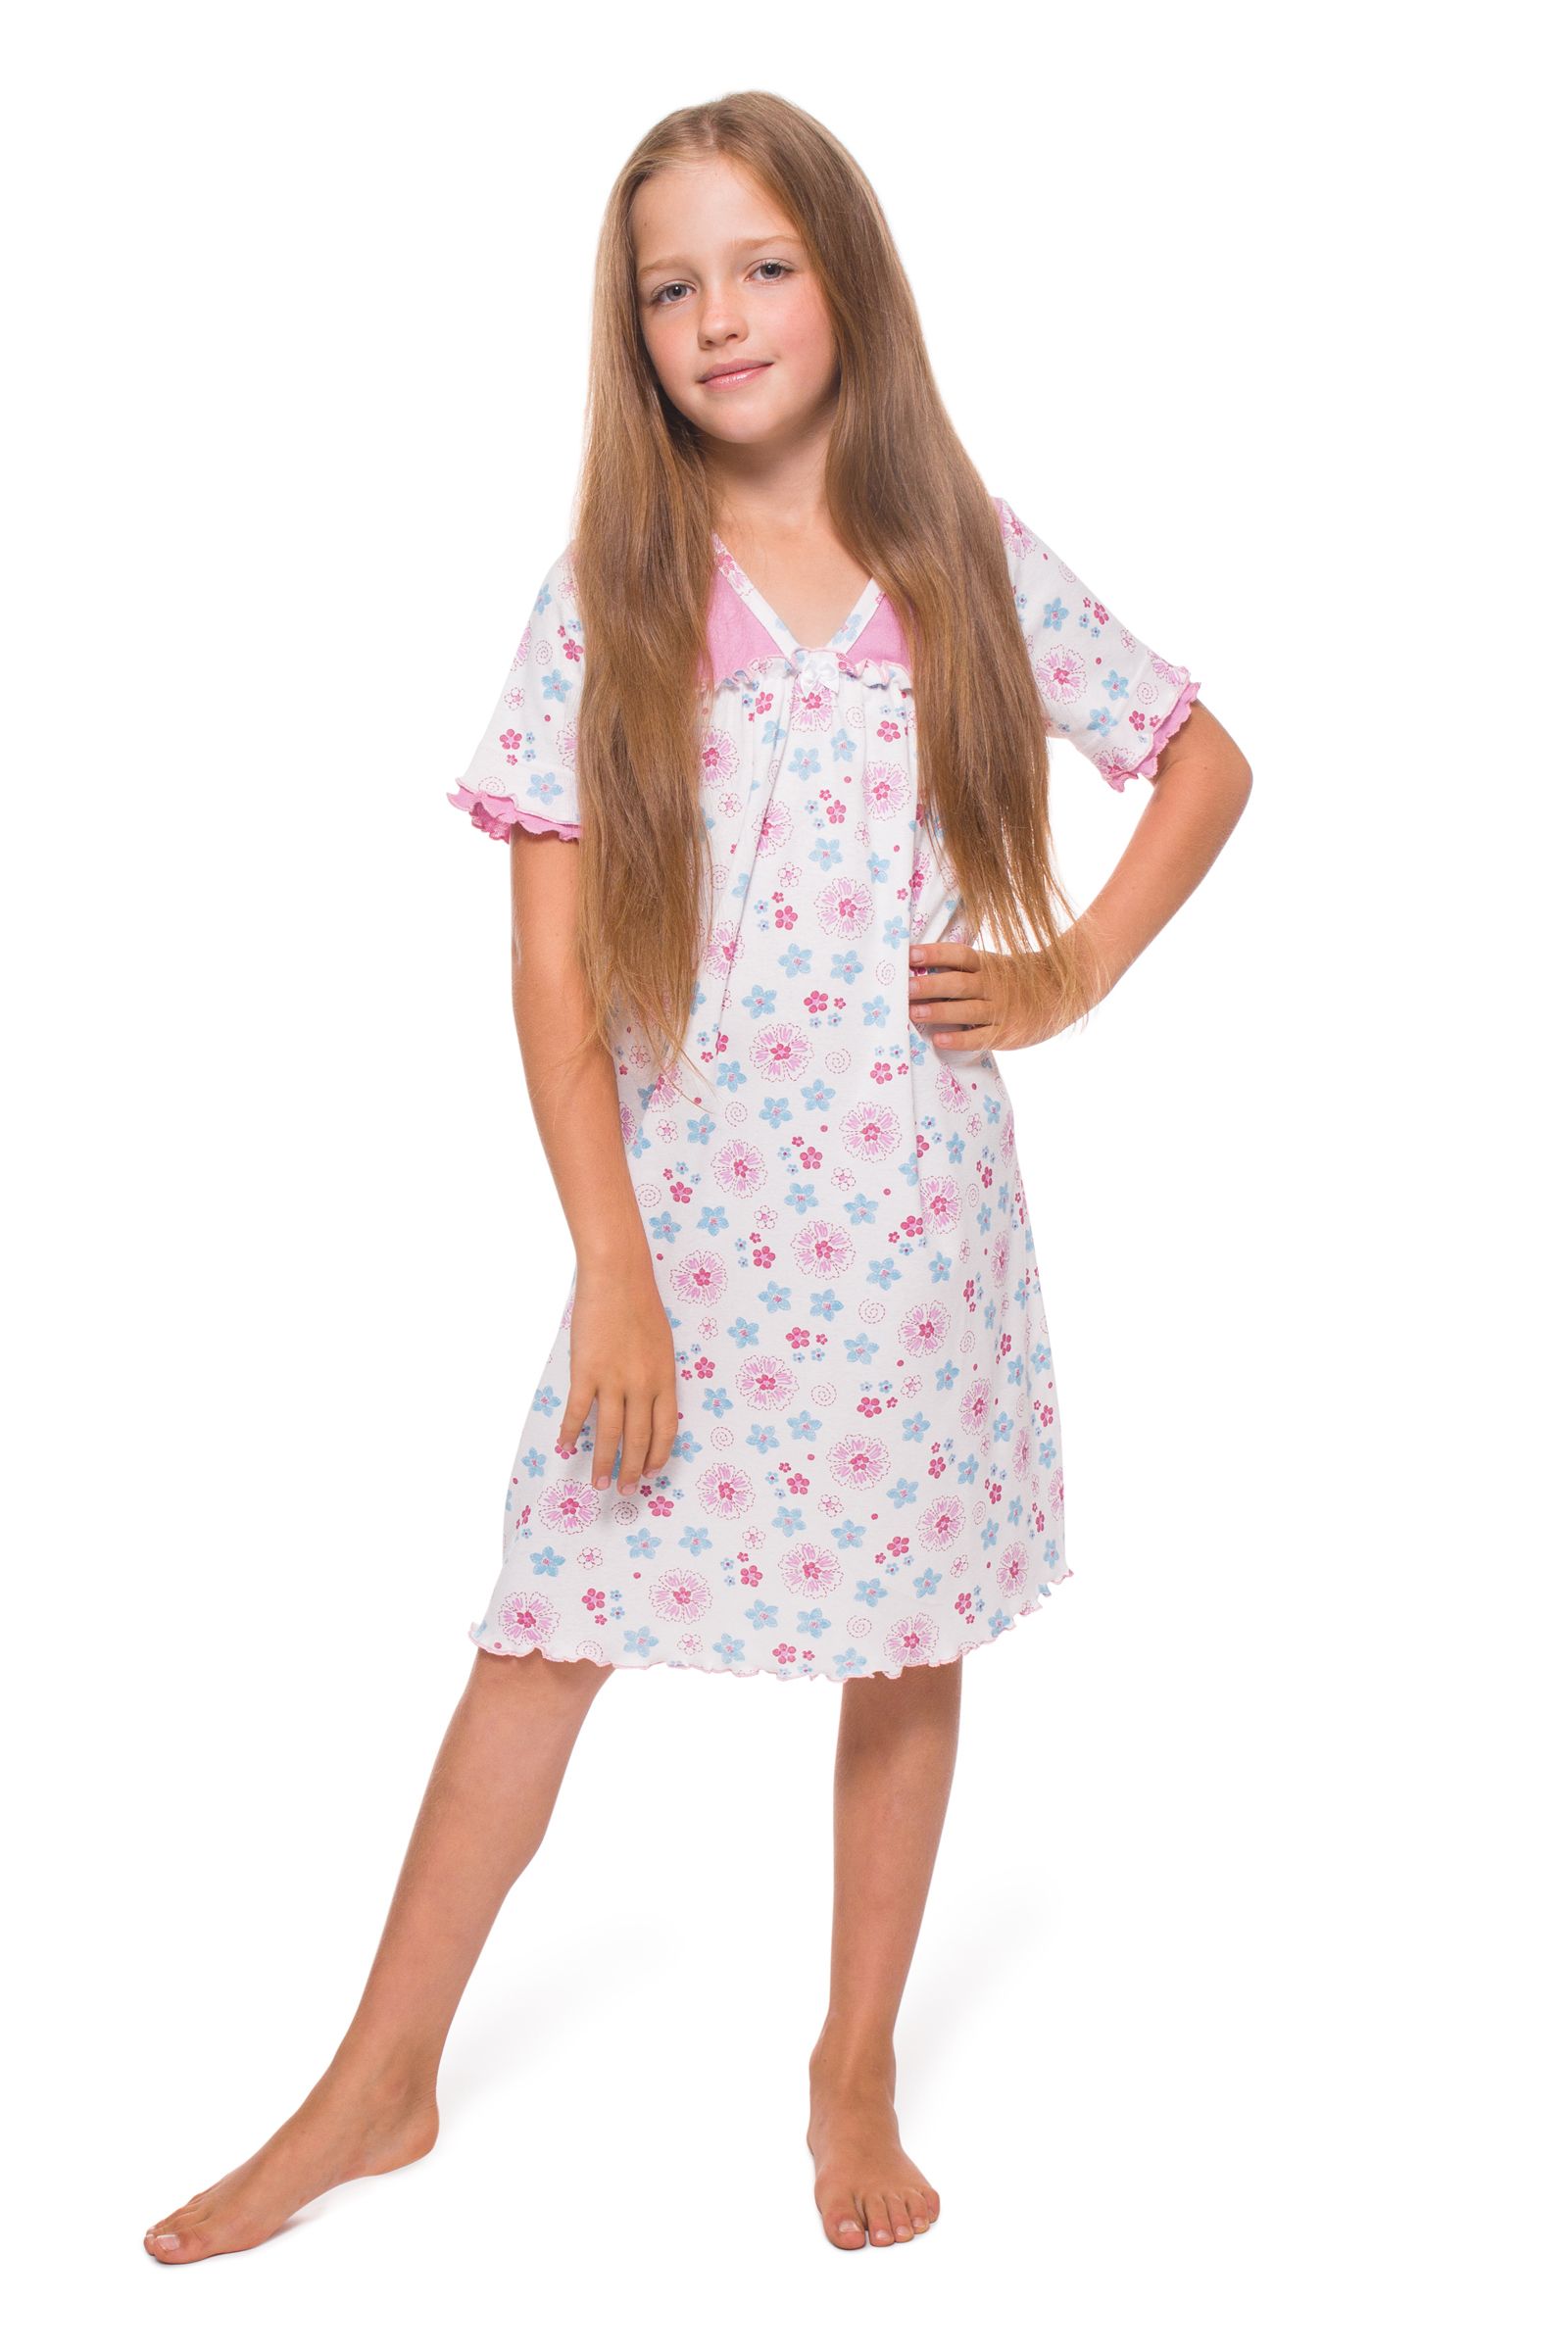 Ночная сорочка-СР03-616 оптом от производителя детской одежды 'Алёна'